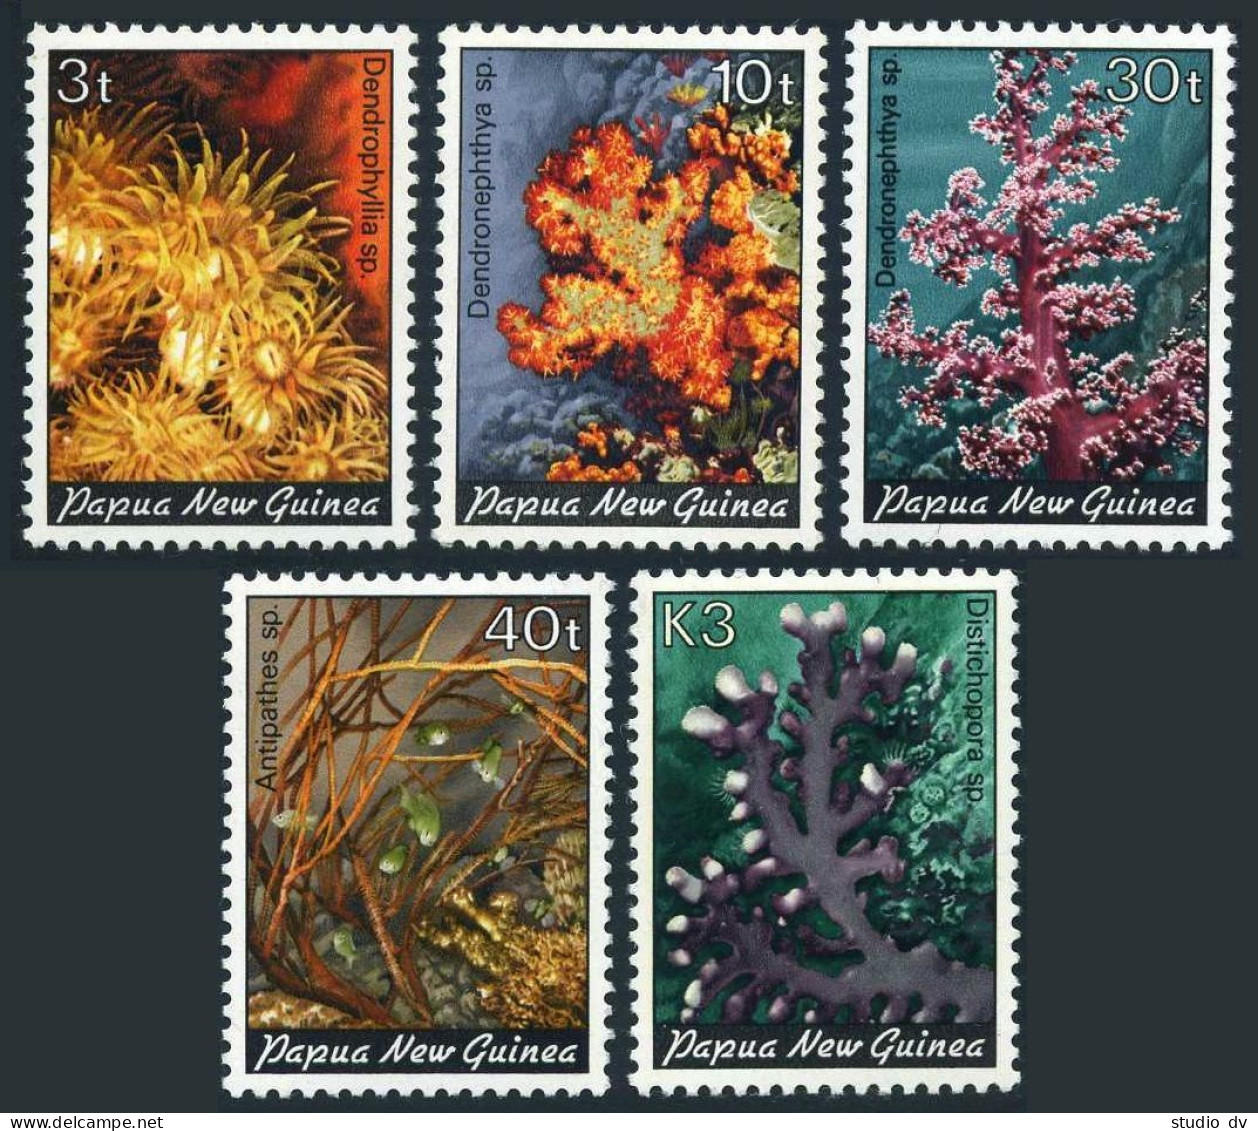 Papua New Guinea 575-579, MNH. Corals - 1983 (1). - Guinee (1958-...)